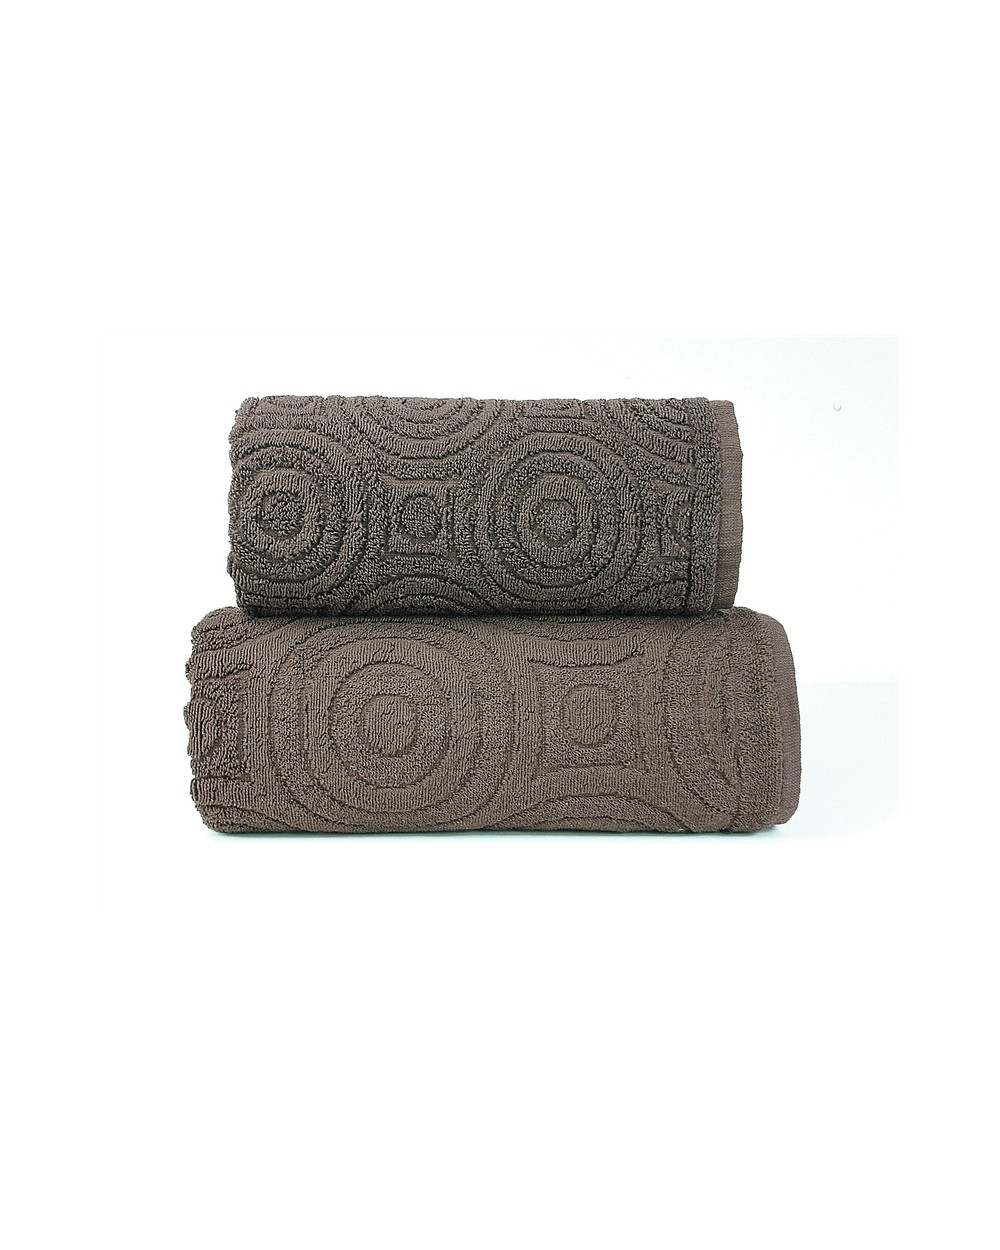 Ręcznik Emma 2 bawełna 70x140 brązowy